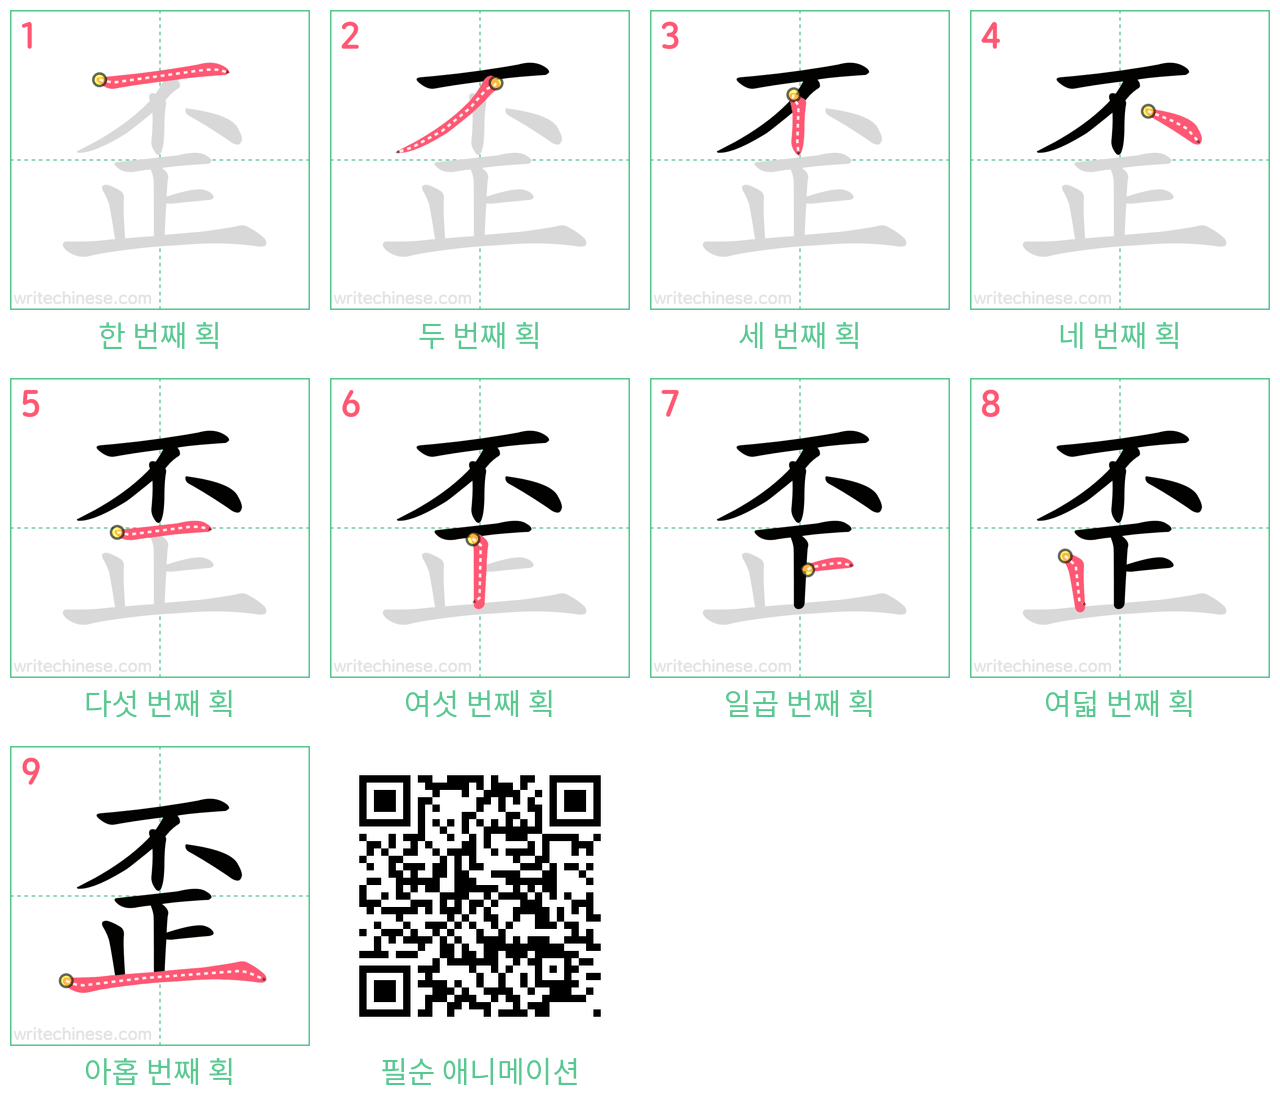 歪 step-by-step stroke order diagrams